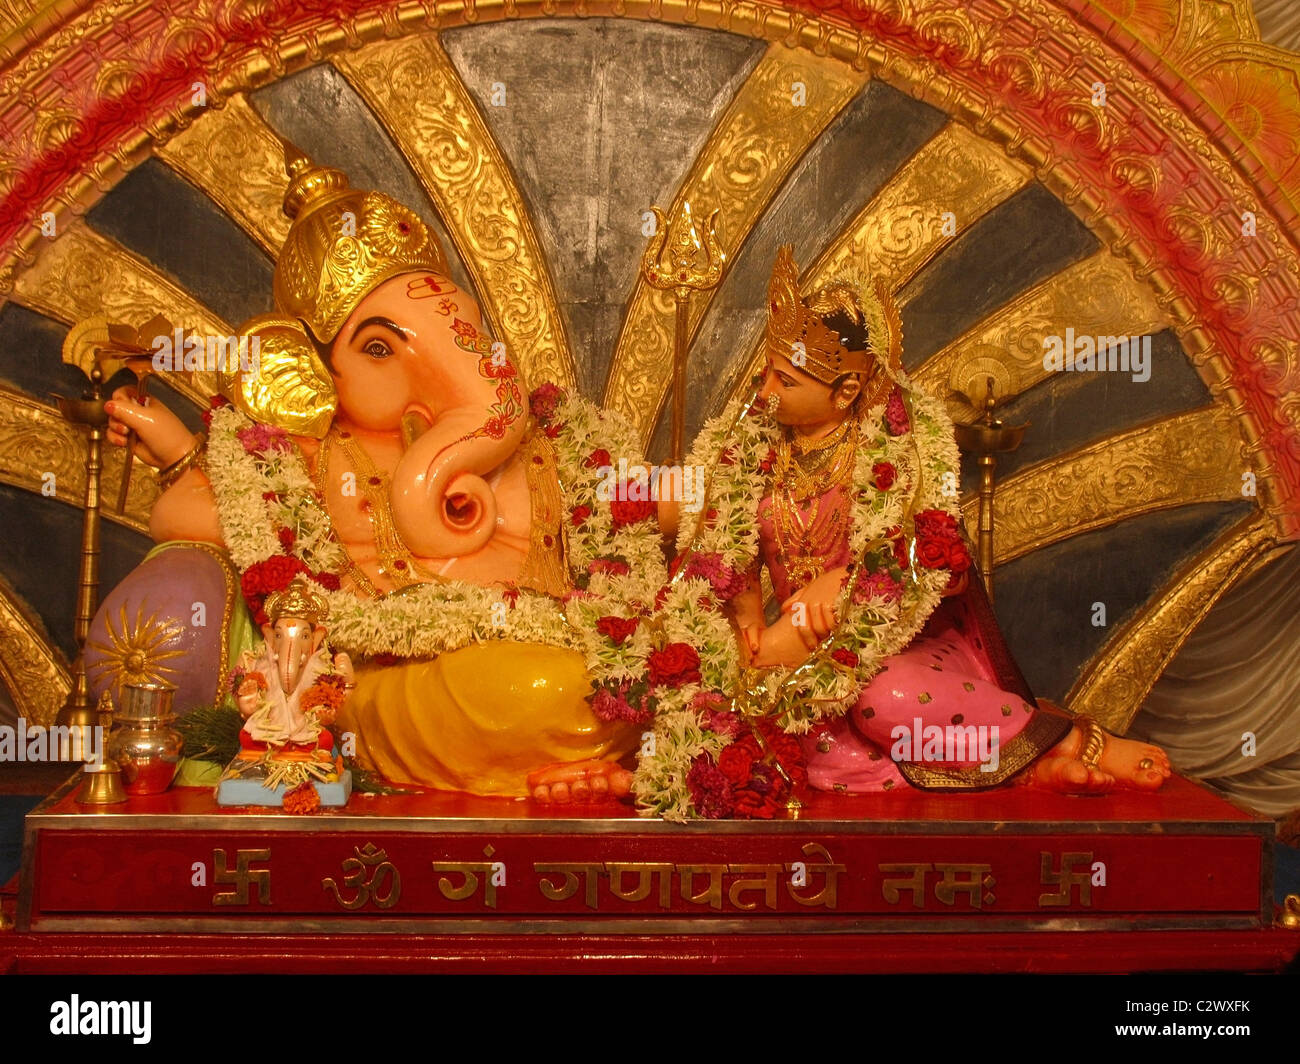 Dekorierte Idol von Lord Ganesh bei Ganesh Festival, Pune, Maharashtra, Indien Stockfoto